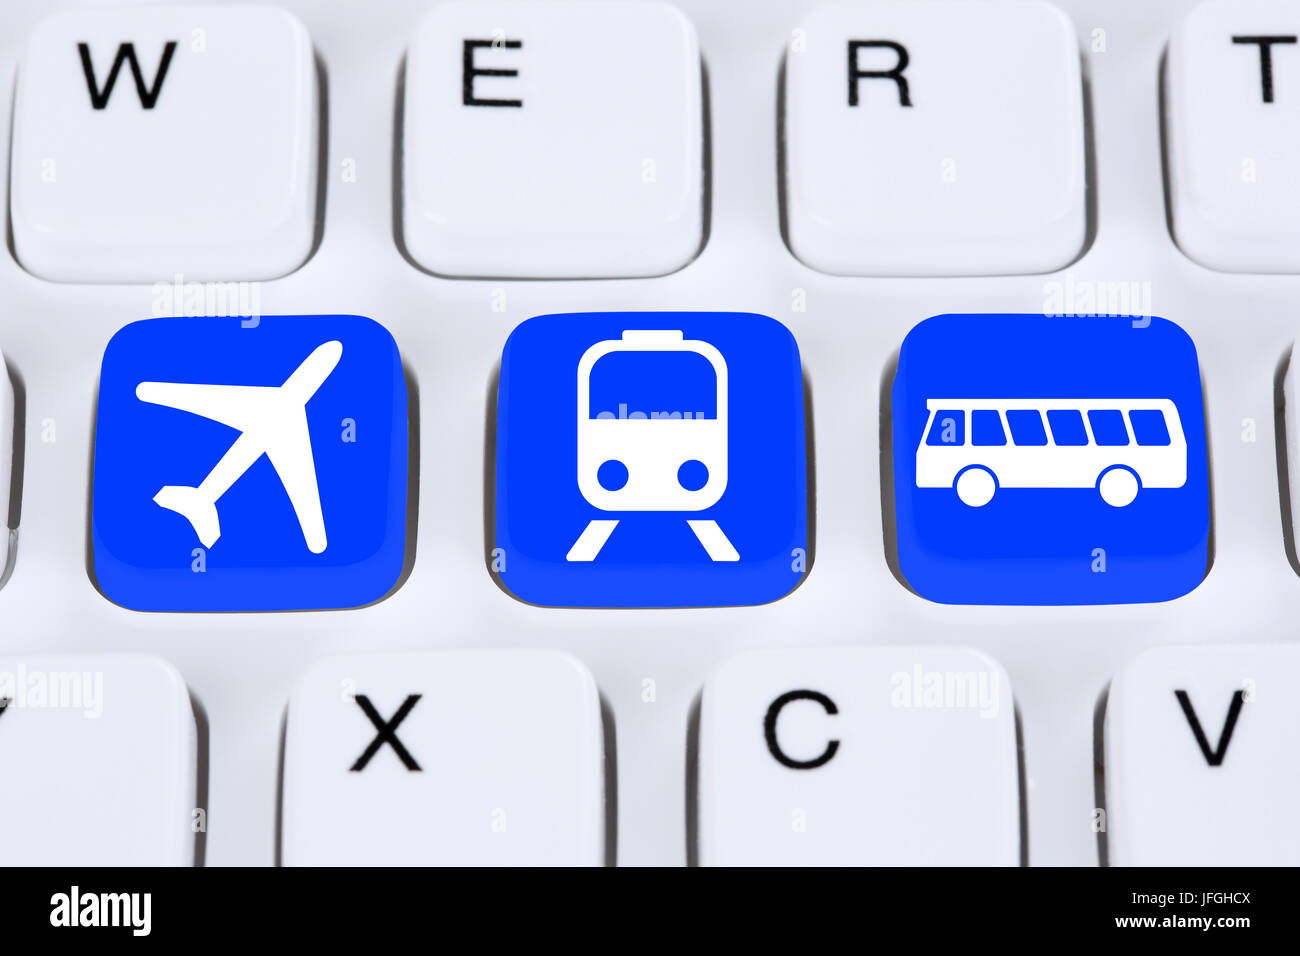 Reise online im Internet buchen mit Flugzeug, Bahn oder Bus Stock Photo -  Alamy